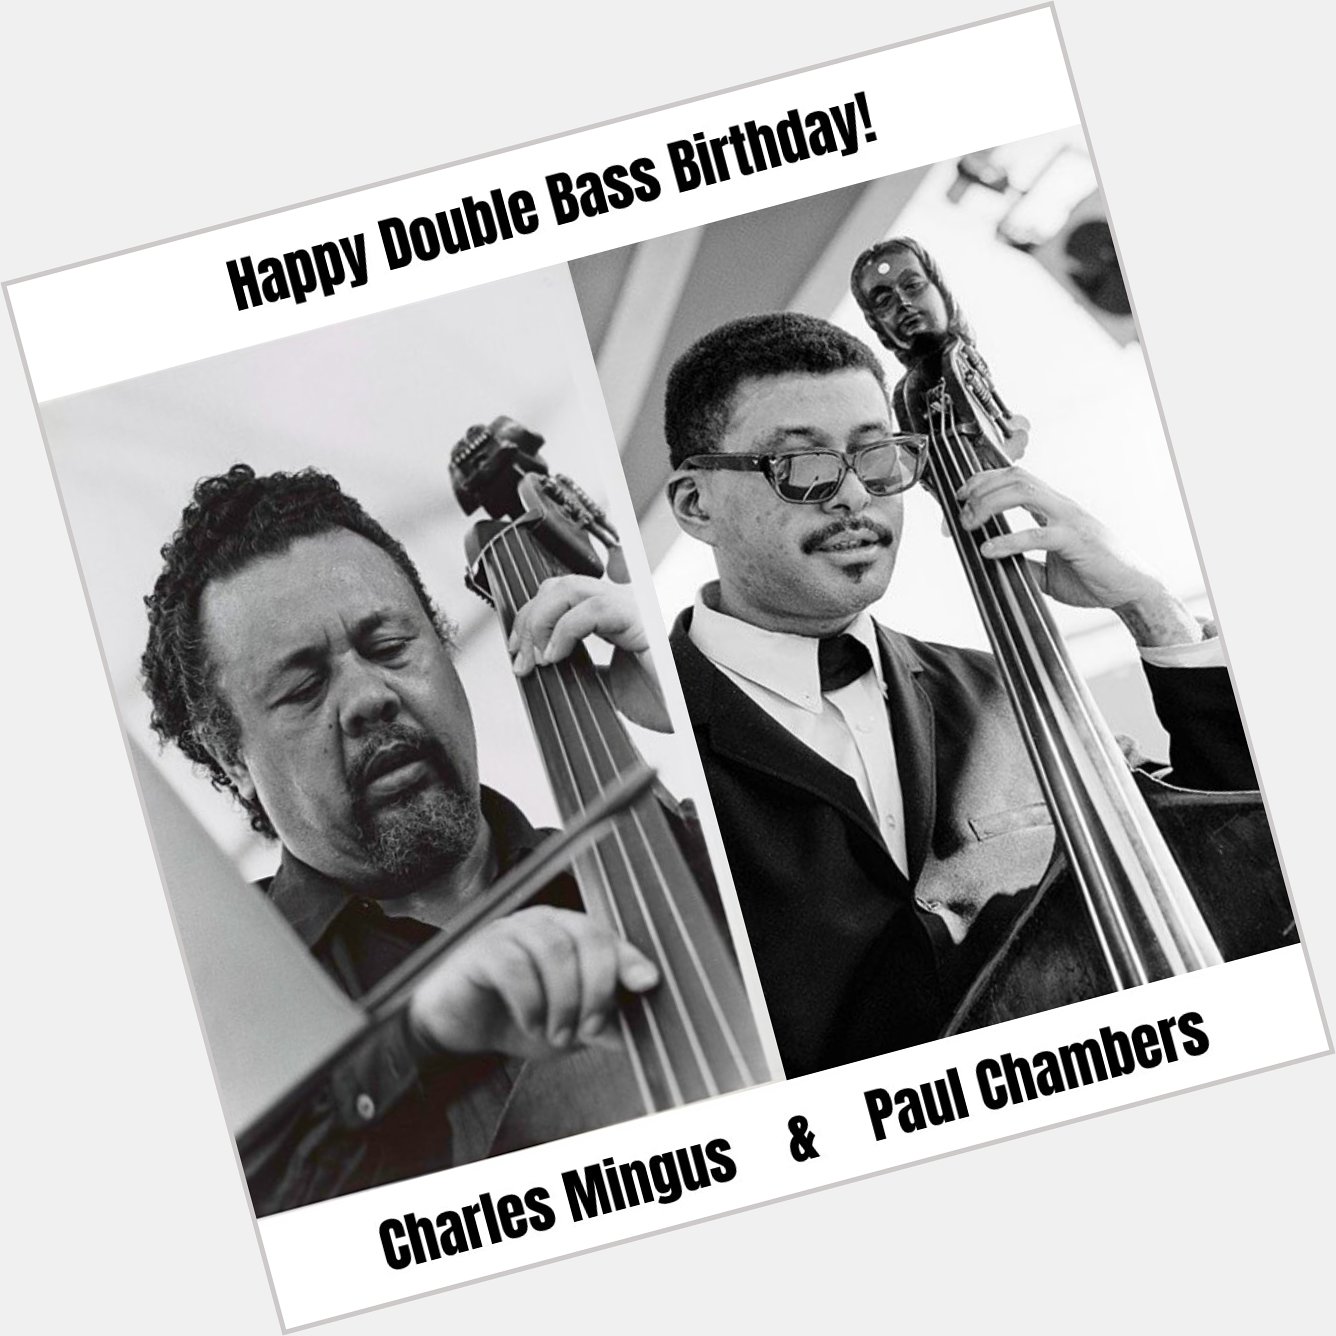 Happy Birthday to Charles Mingus & Paul Chambers! 